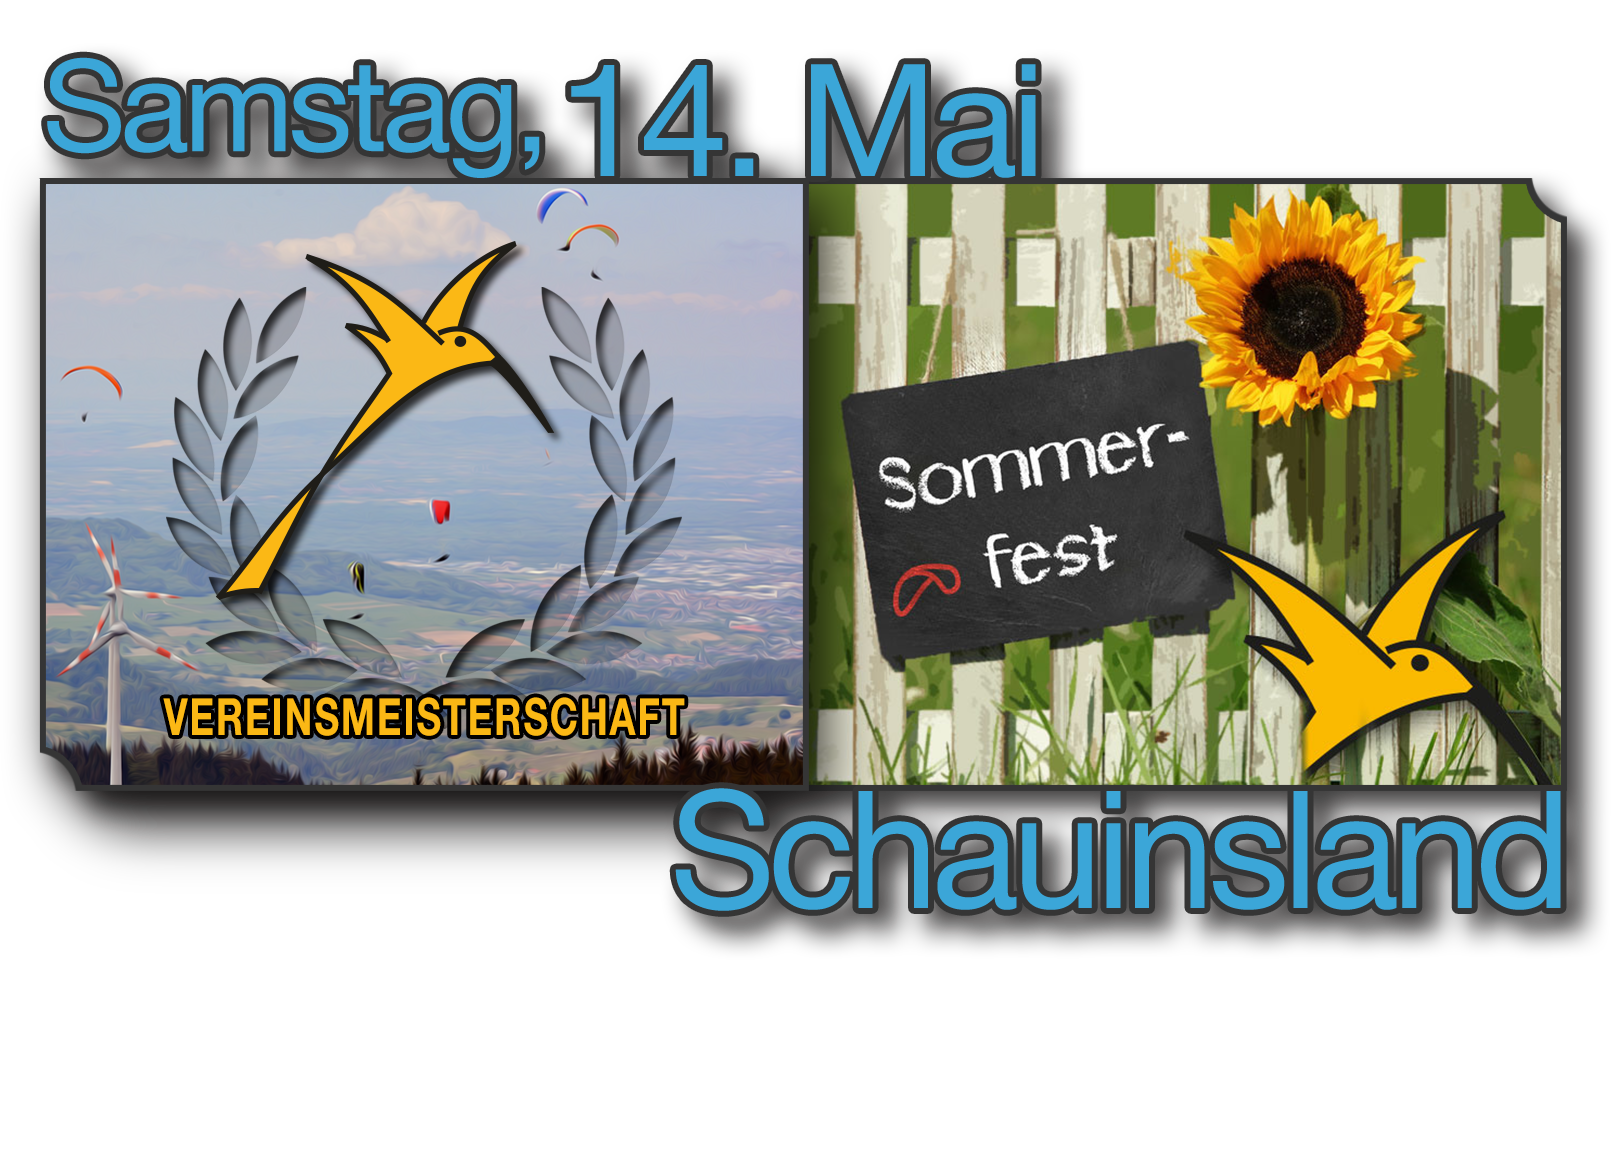 Vereinsmeisterschaft und Sommerfest 2016 (14.05.)